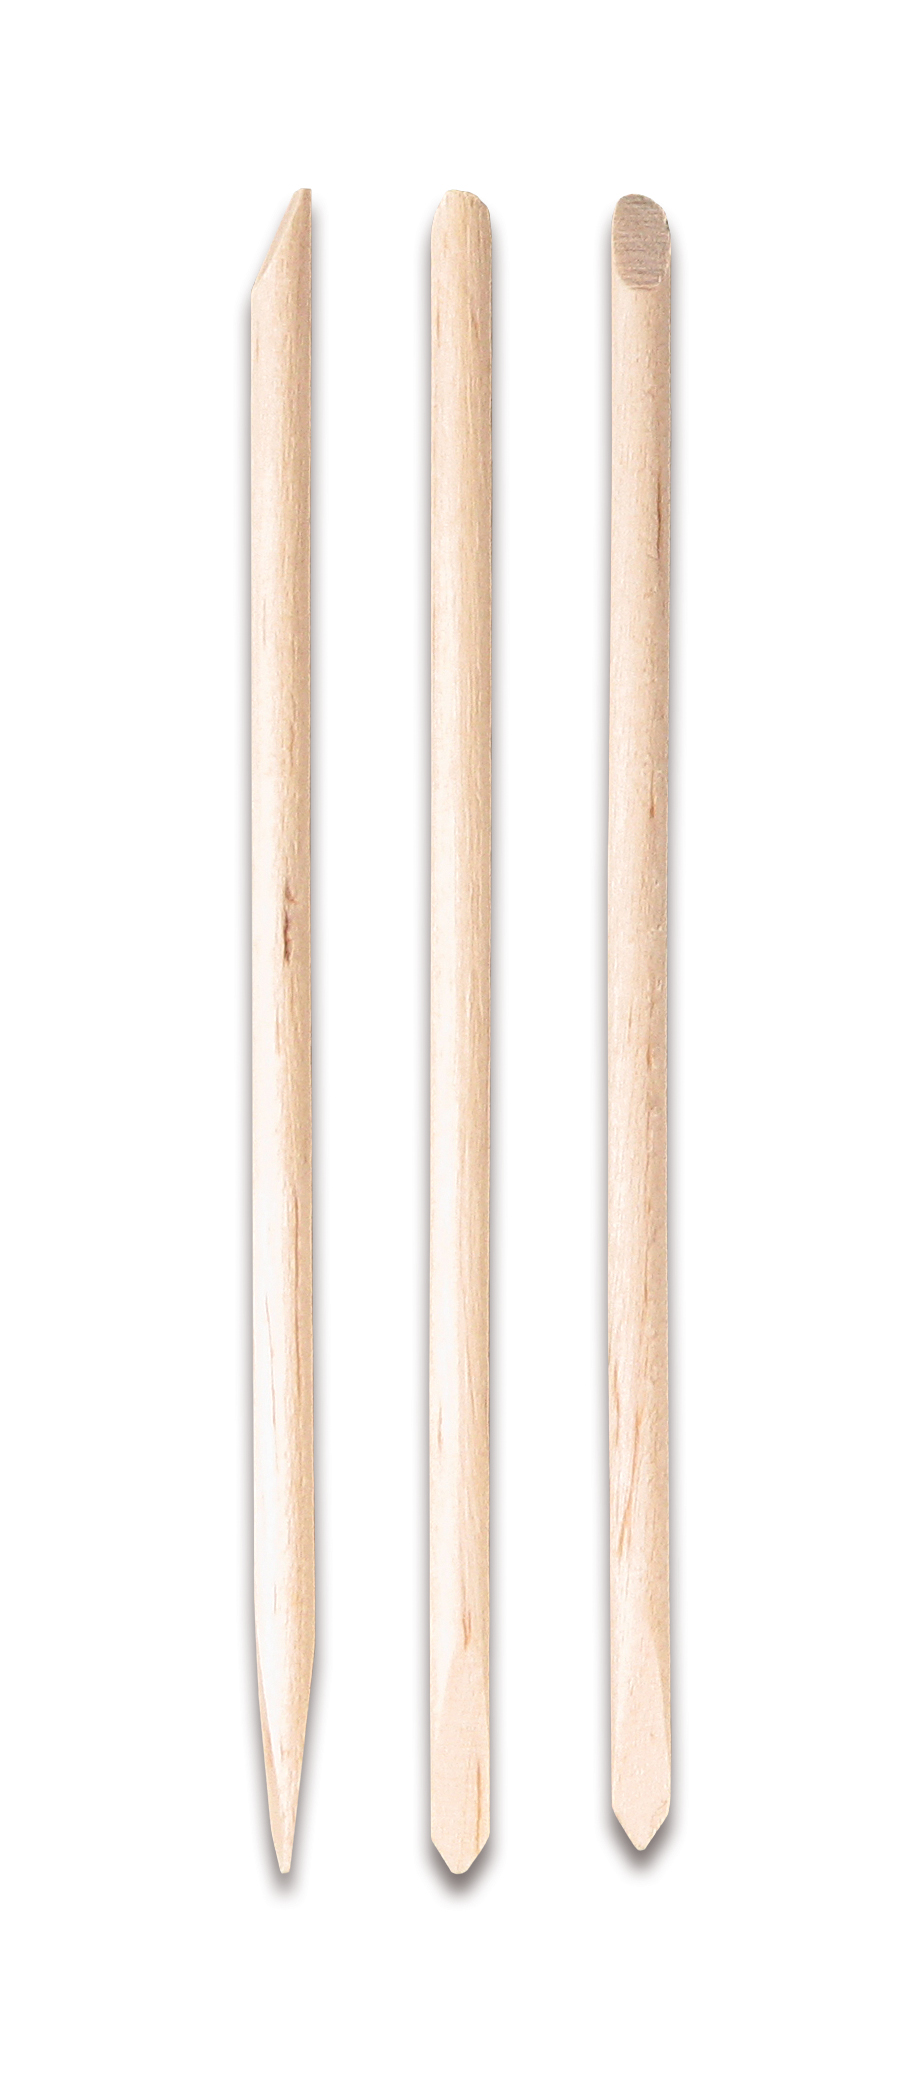 Дерев'яні палички Titania, 3 шт. (1033 B) - фото 1